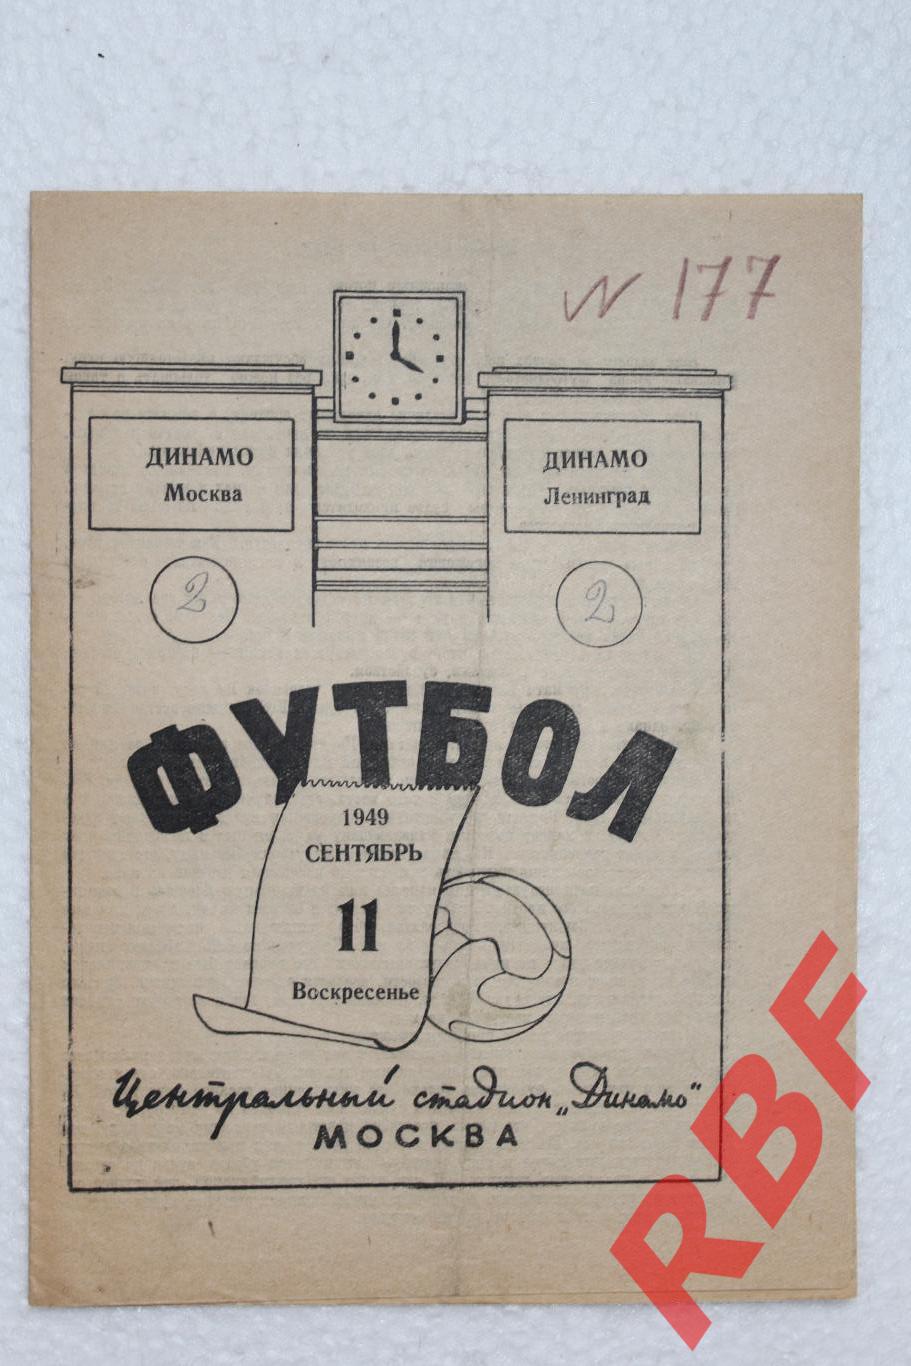 Динамо (Москва) - Динамо (Ленинград),11 сентября 1949